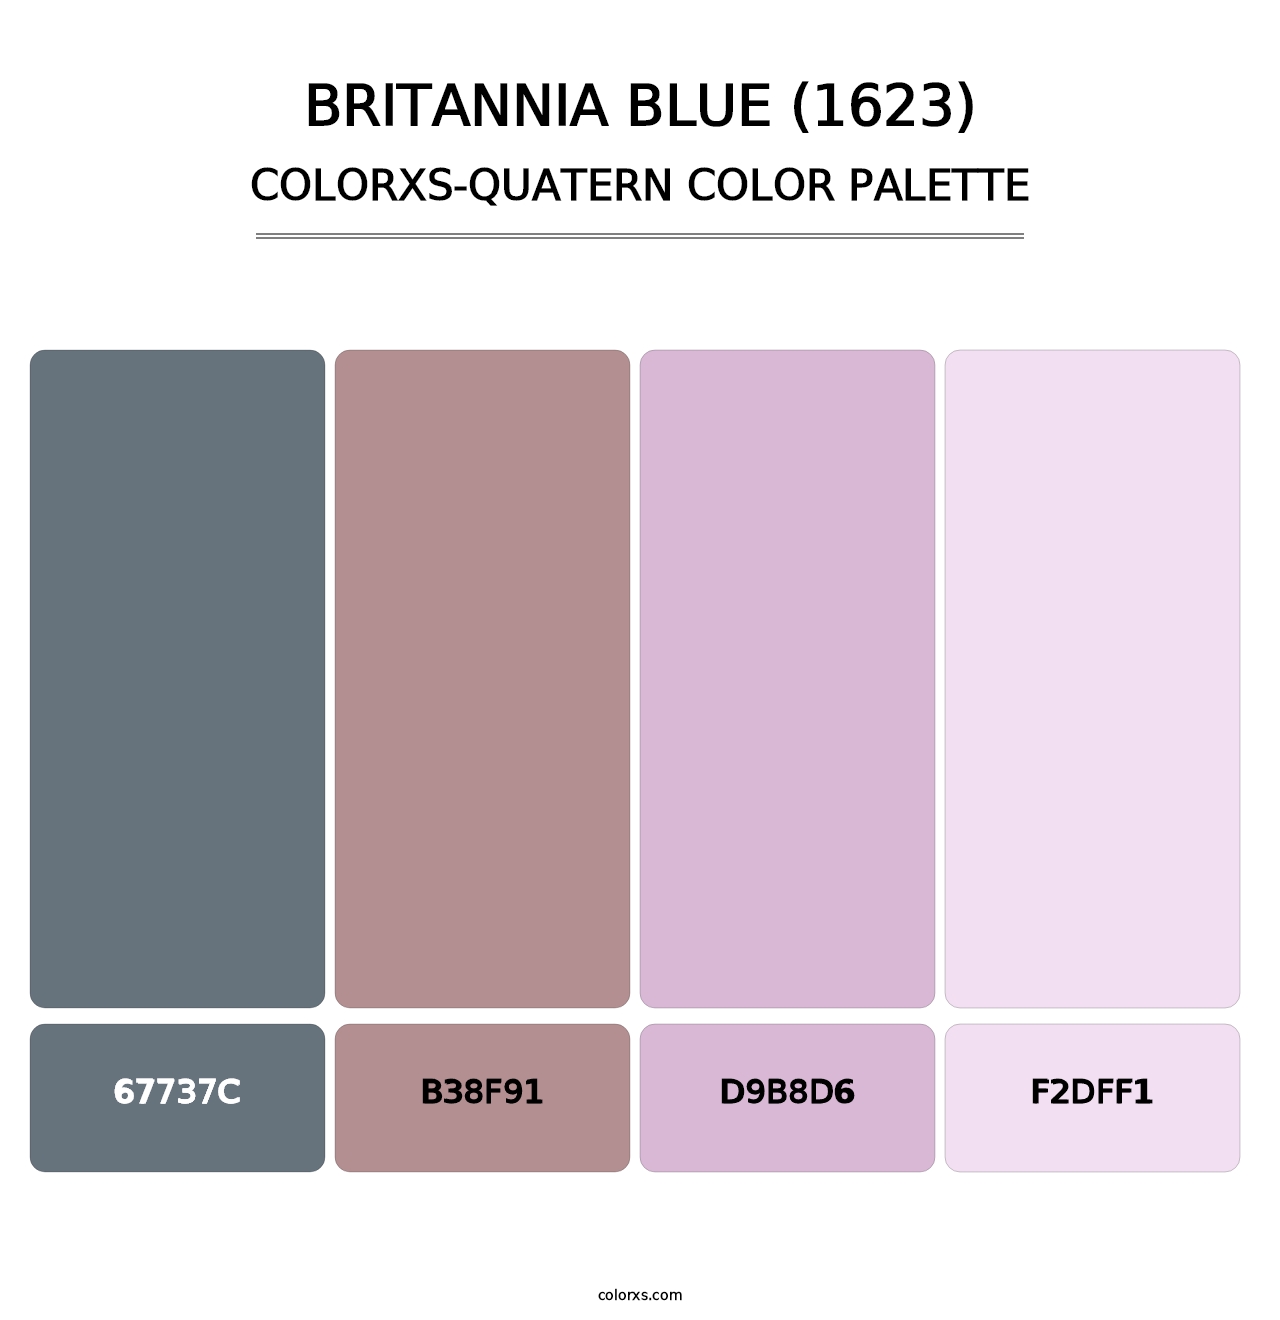 Britannia Blue (1623) - Colorxs Quatern Palette